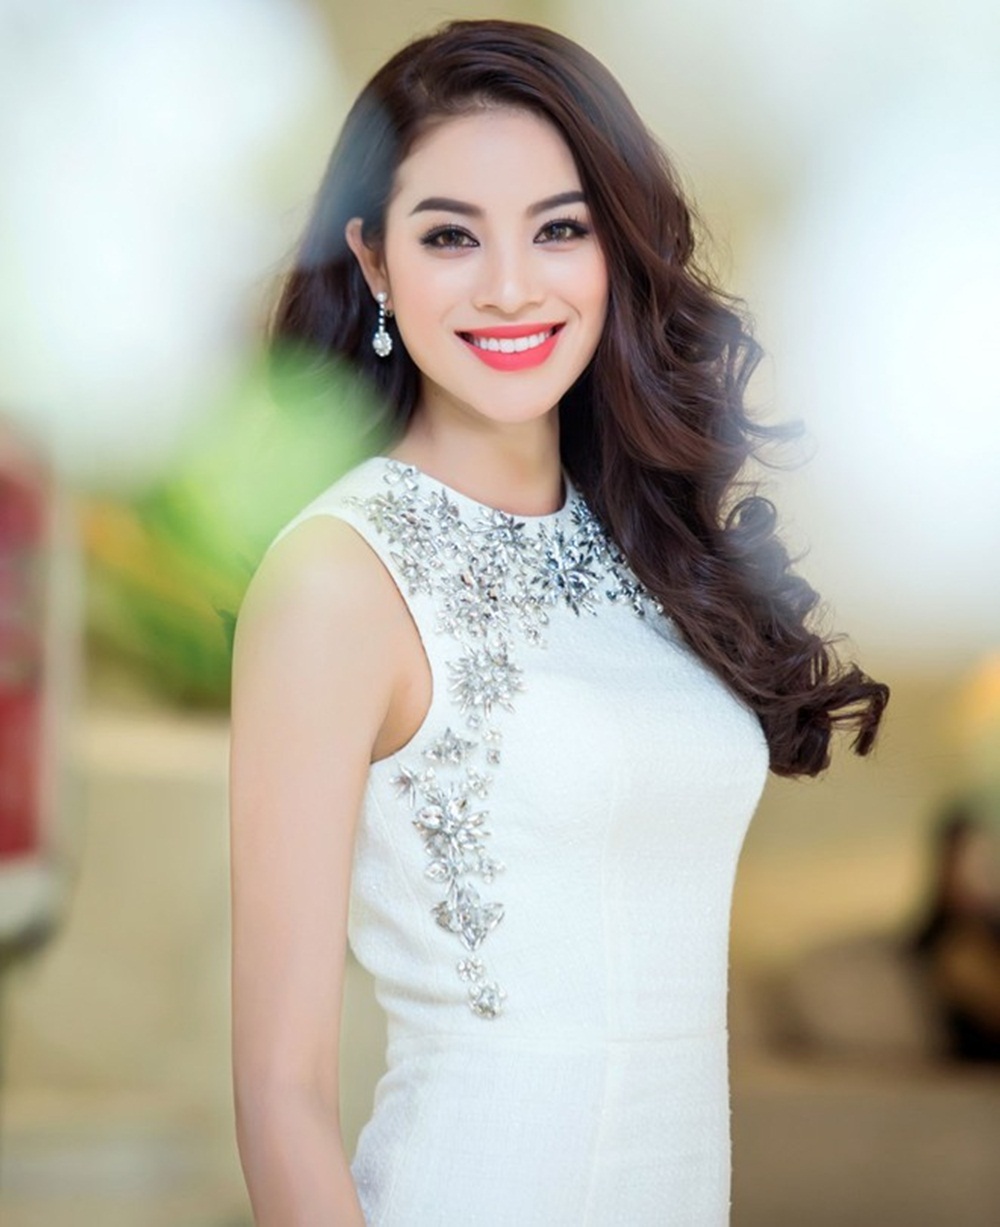 Sau khi tạp chí The Richest, công bố danh sách 50 người đẹp nhất Thế giới, rất nhiều fans hâm mộ và khán giả Việt đã gửi lời chúc mừng đến Phạm Hương.